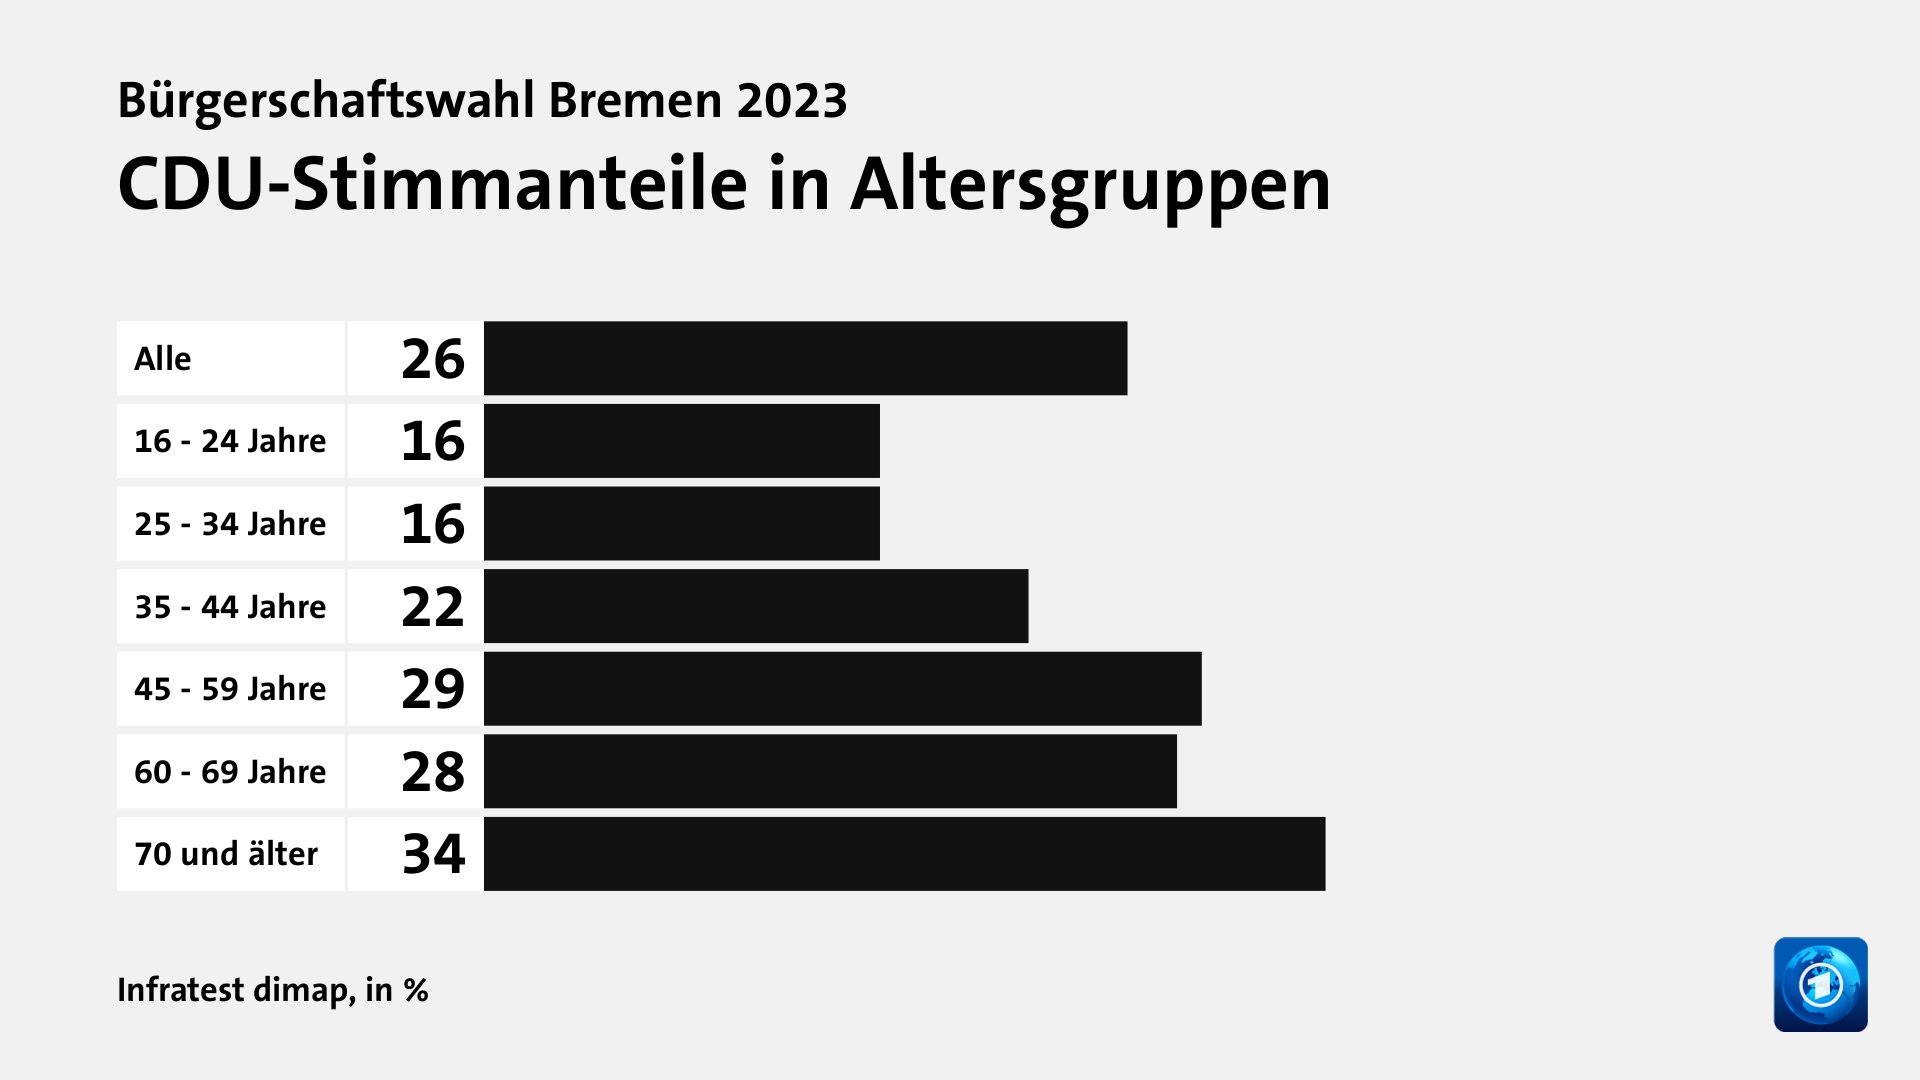 CDU-Stimmanteile in Altersgruppen, in %: Alle 26, 16 - 24 Jahre 16, 25 - 34 Jahre 16, 35 - 44 Jahre 22, 45 - 59 Jahre 29, 60 - 69 Jahre 28, 70 und älter 34, Quelle: Infratest dimap